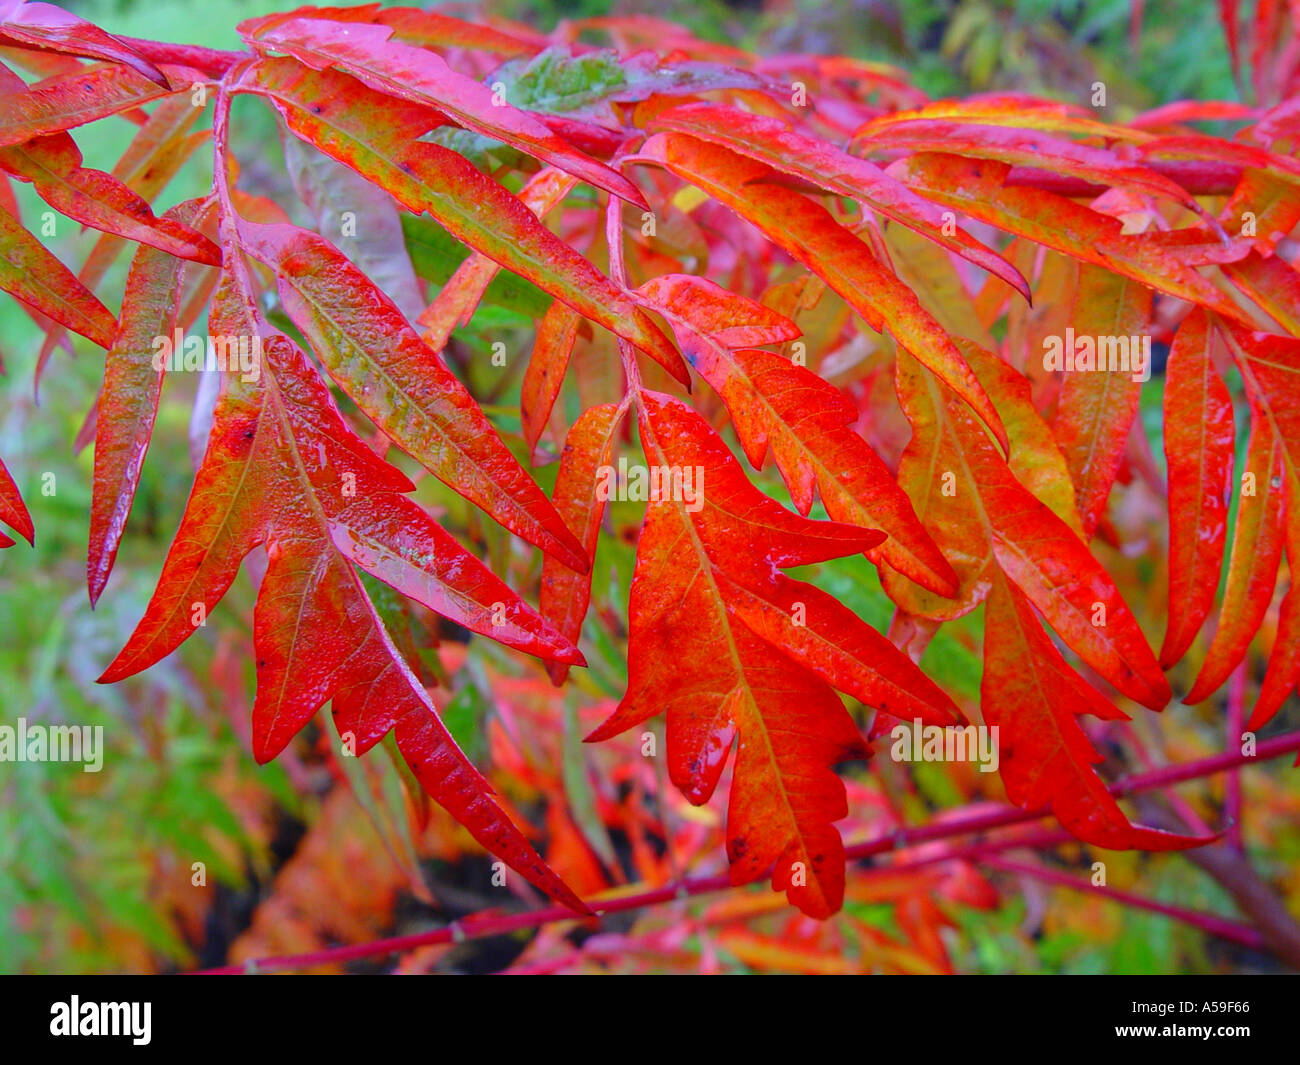 Rhus glabra Laciniata Autumn colour Stock Photo